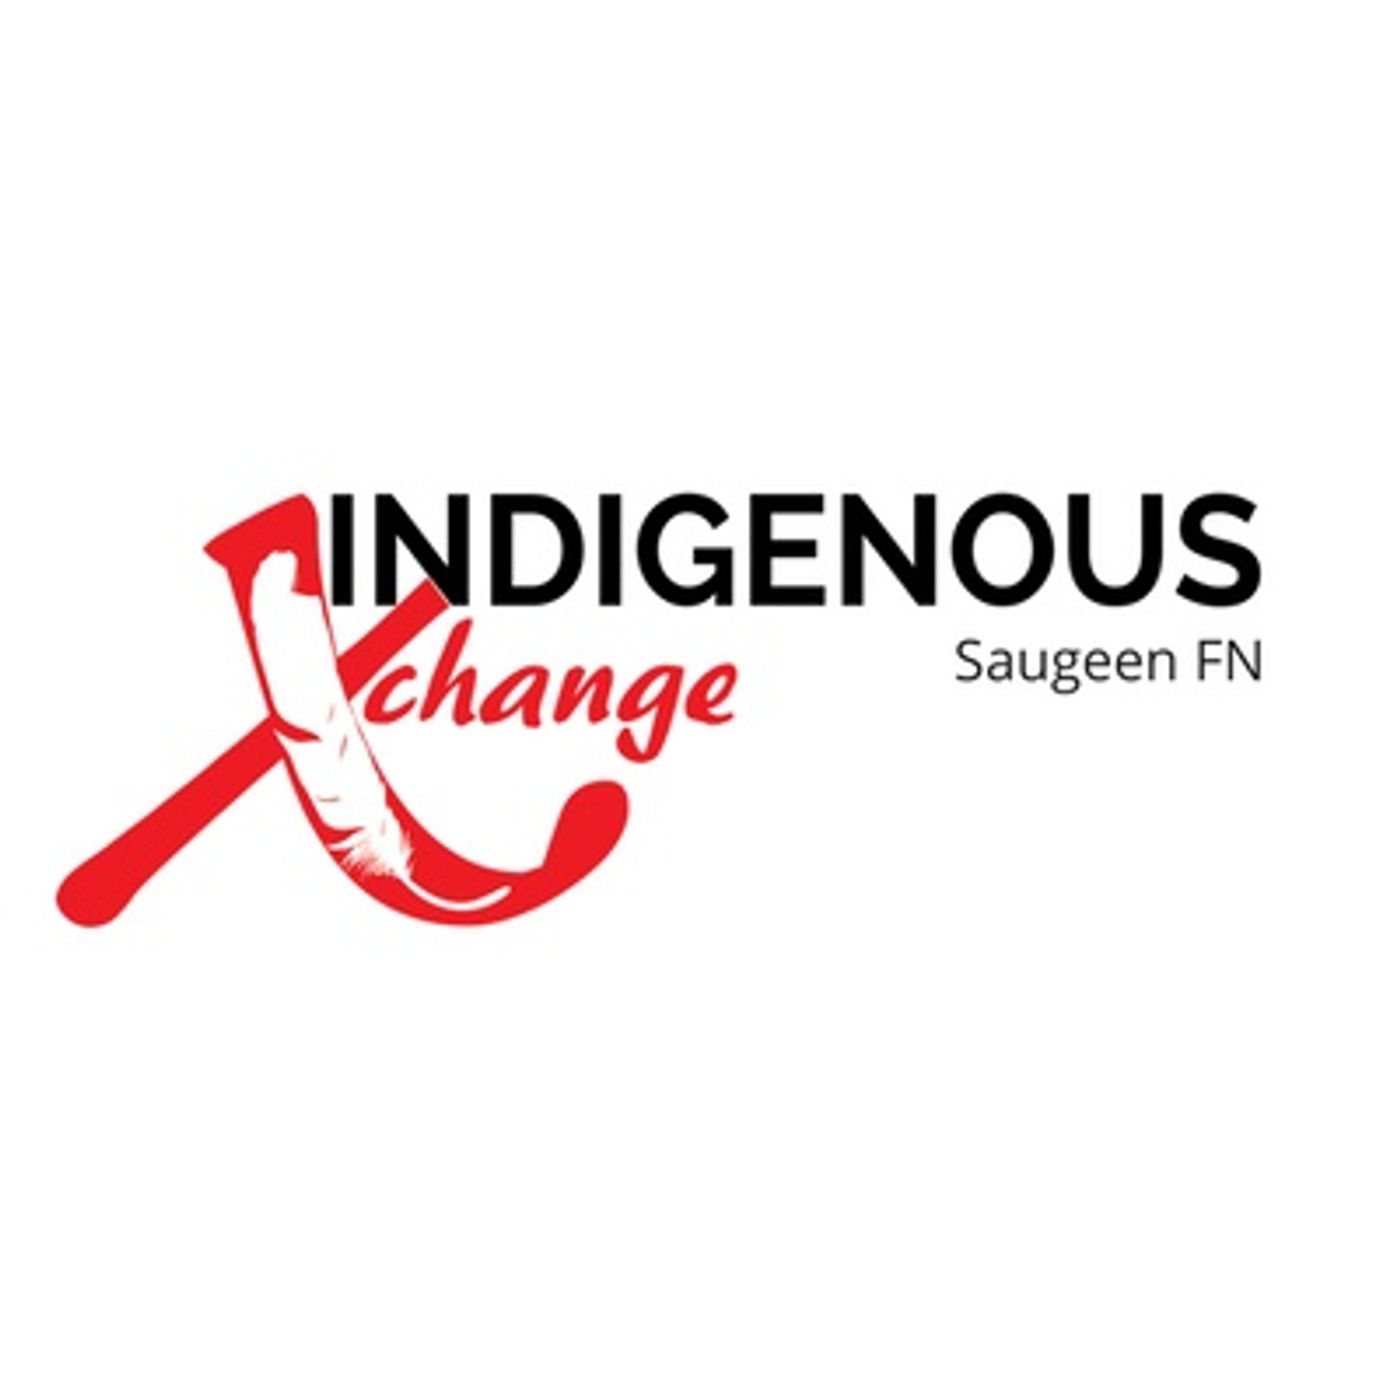 Indigenous Xchange: Saugeen FN